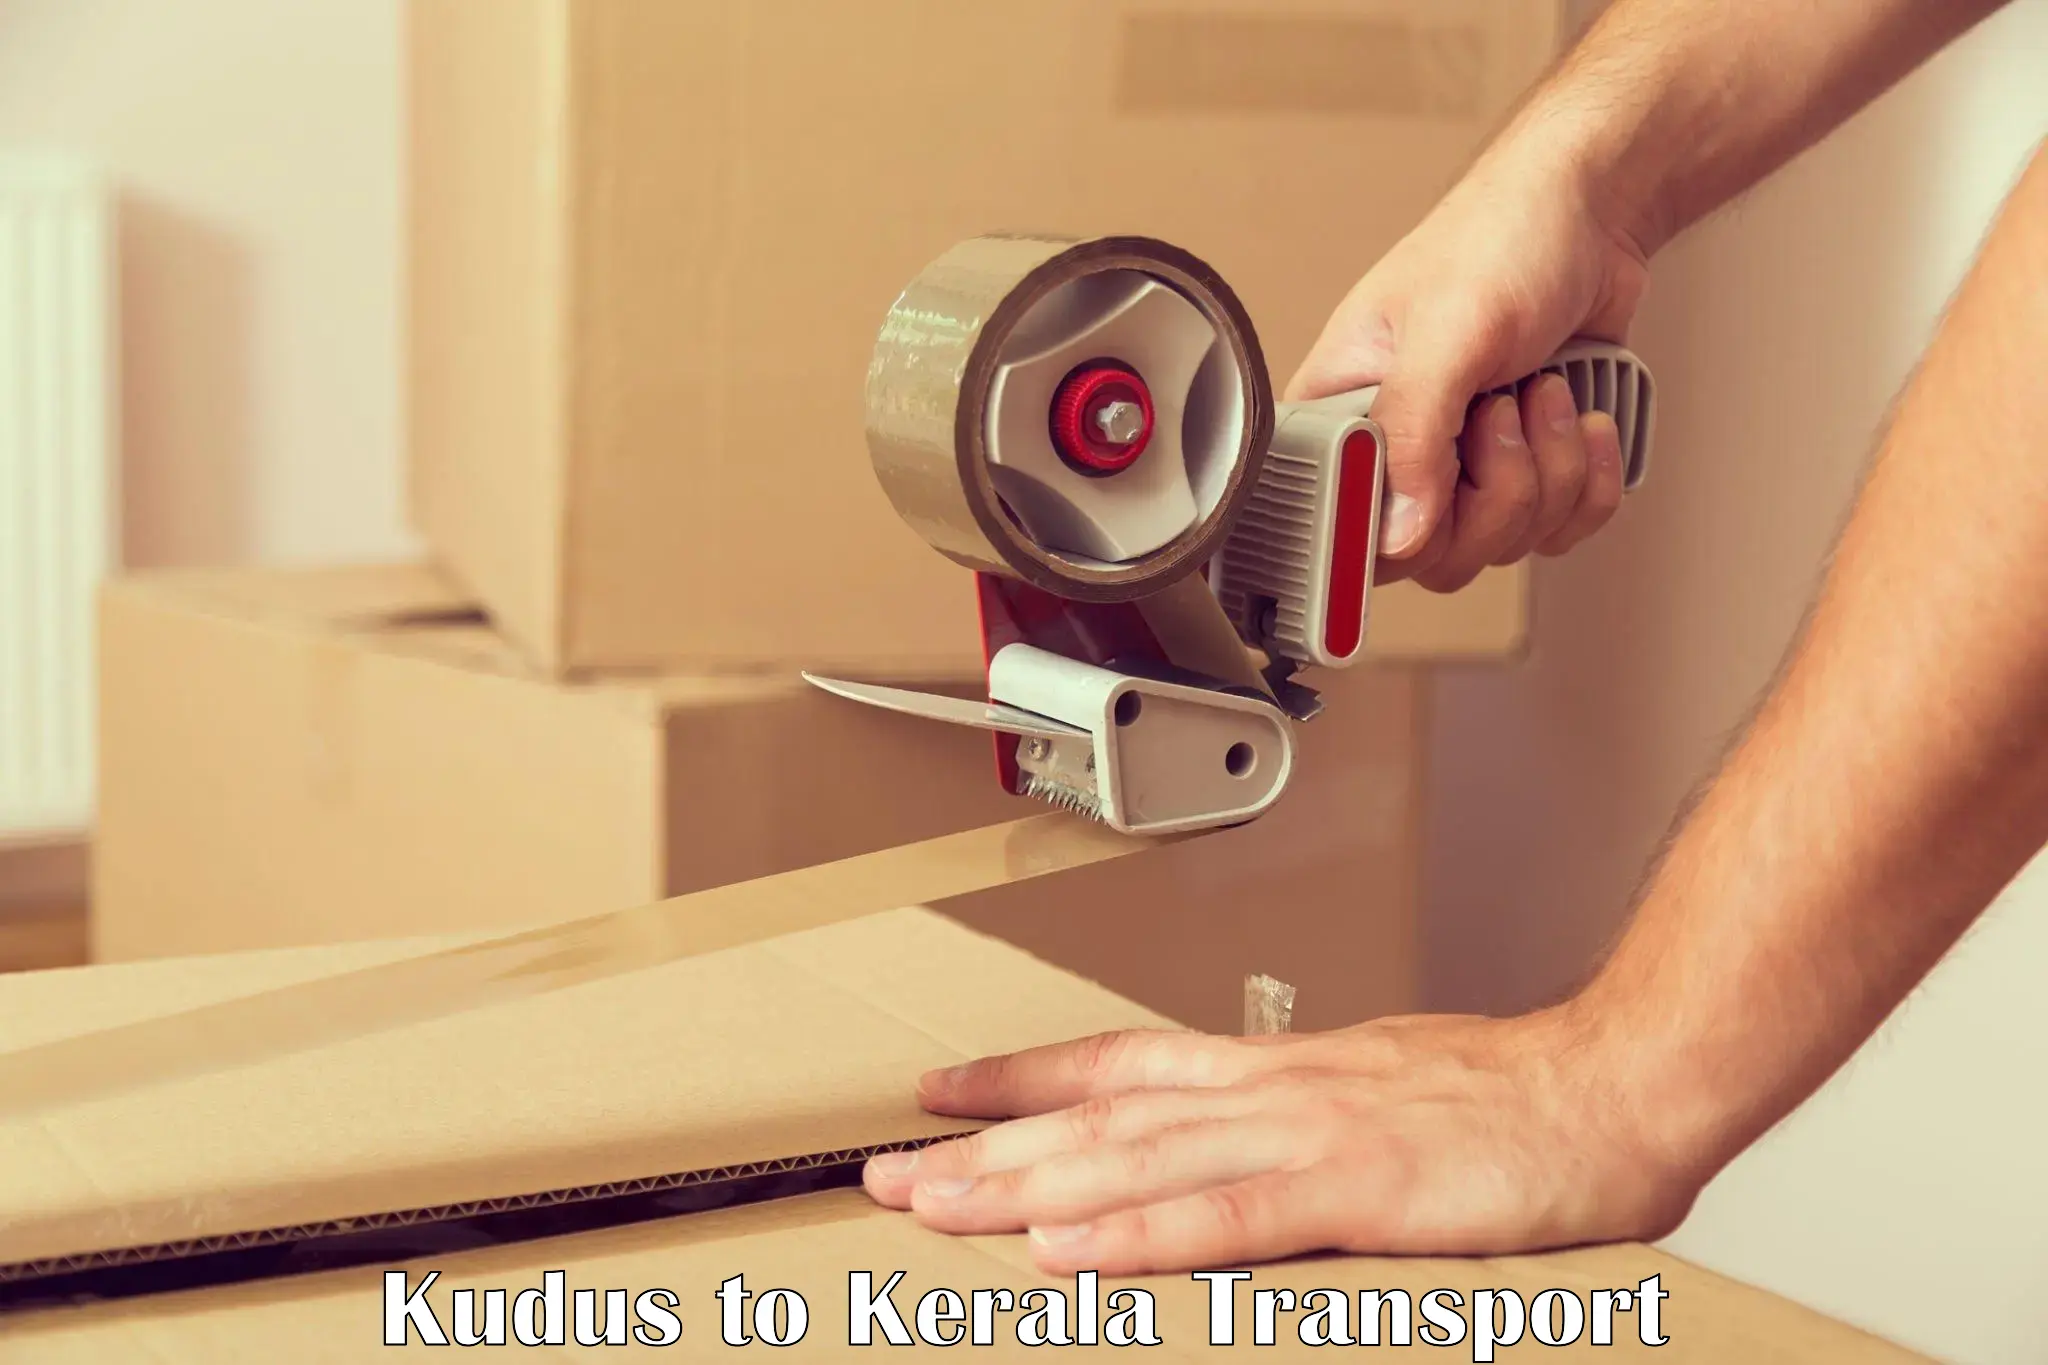 Furniture transport service Kudus to Kerala